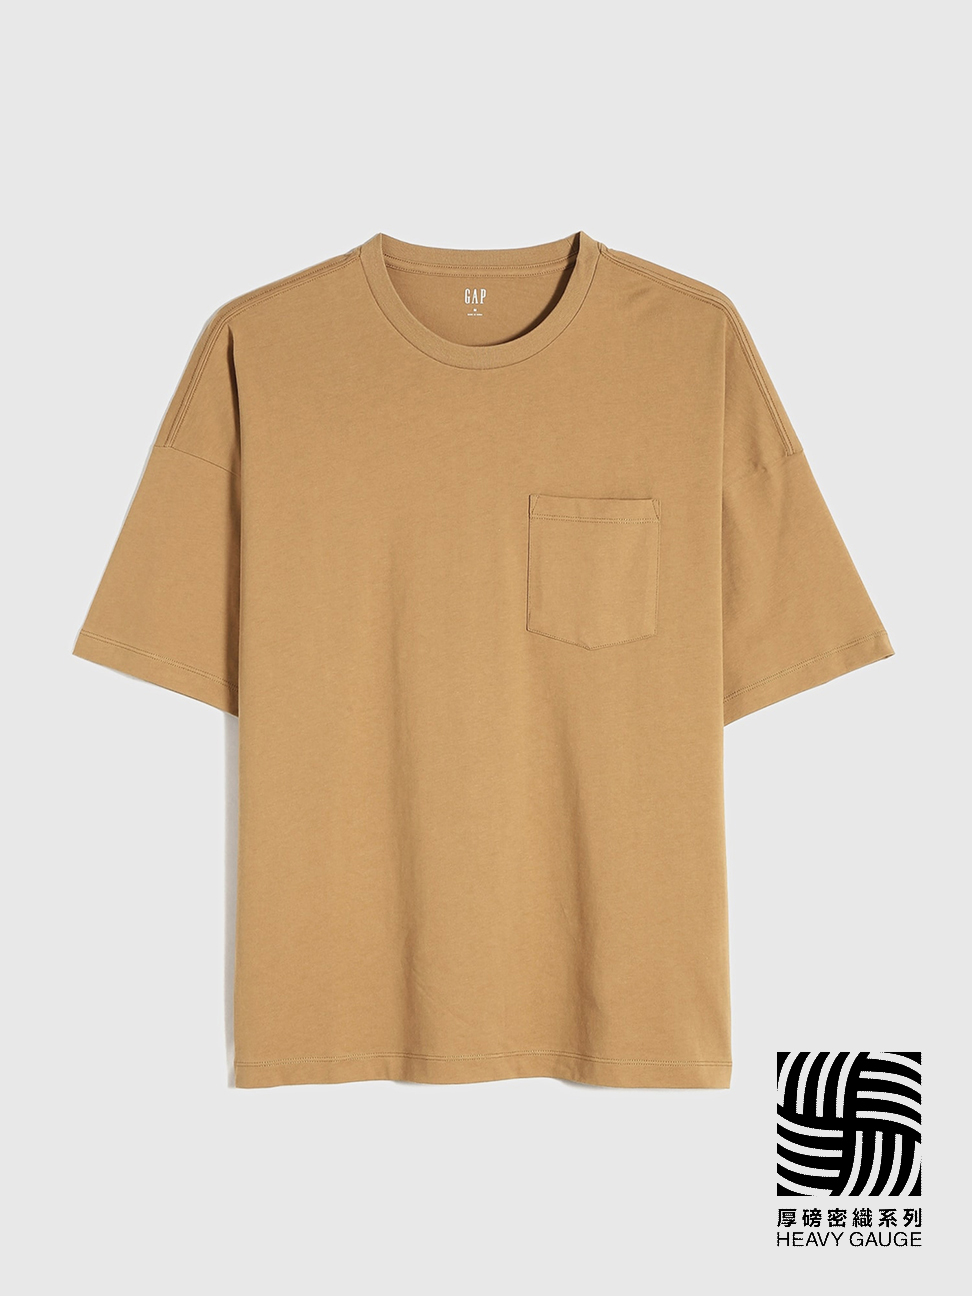 男裝|厚磅密織親膚系列 純棉基本款短袖T恤